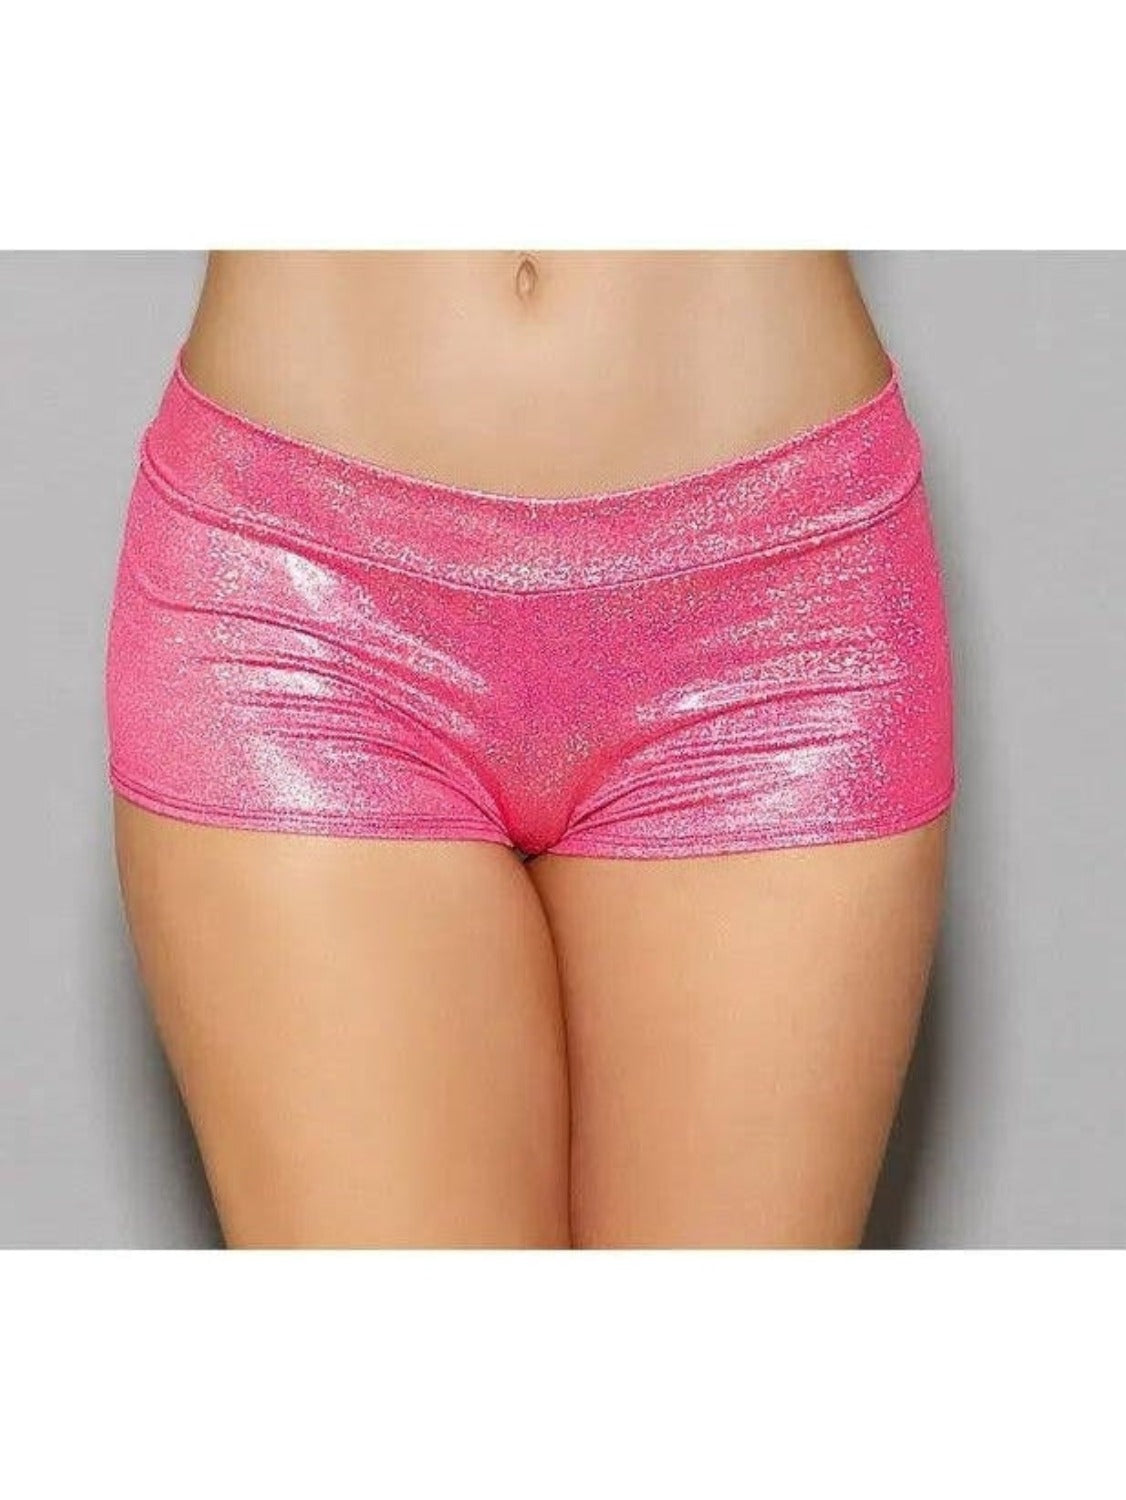 Escante 2094 Blacklight Enhanced Roughed Back Boy short. Pink, Hvid, One Size-Hot Pant Shorts-Escante-One Size-Hologram Pink-SatinBoutique